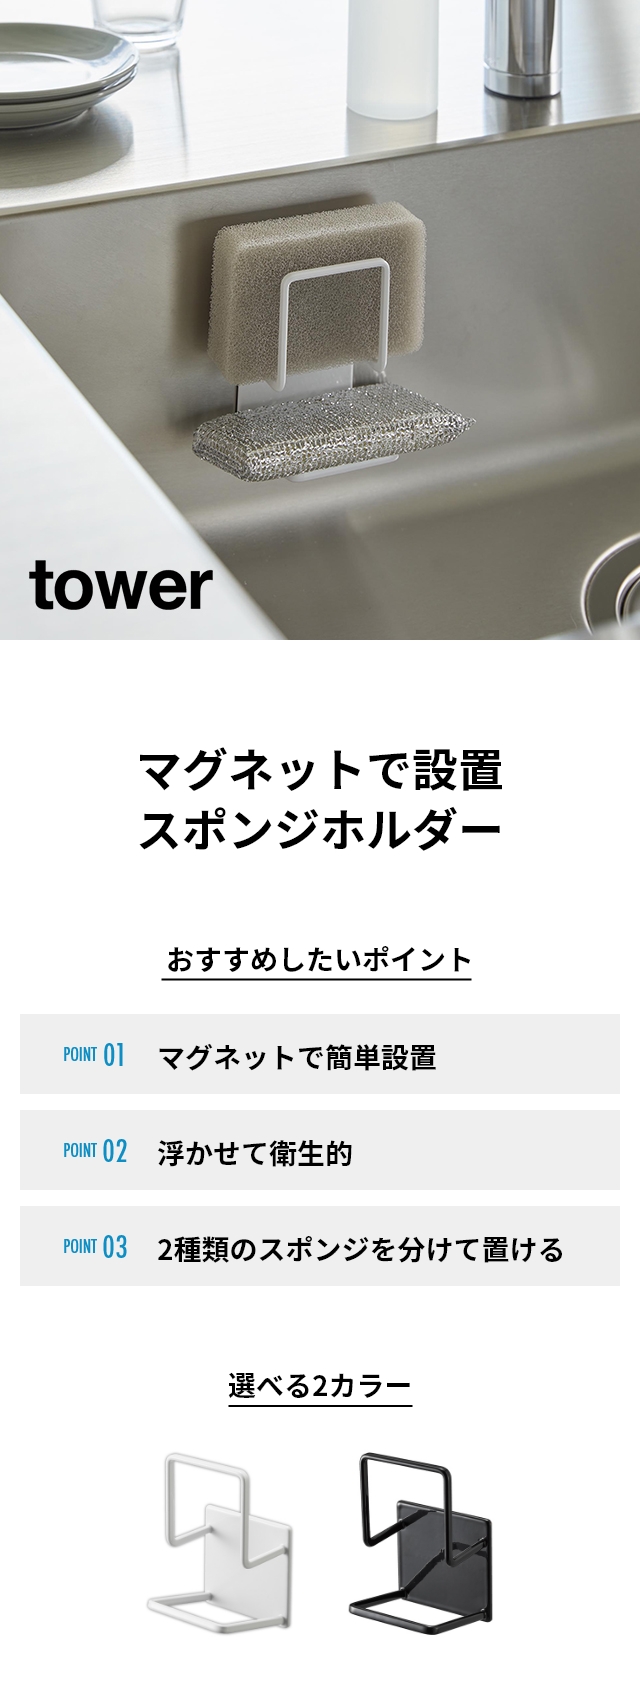 tower(タワー) マグネットスポンジホルダー ダブル